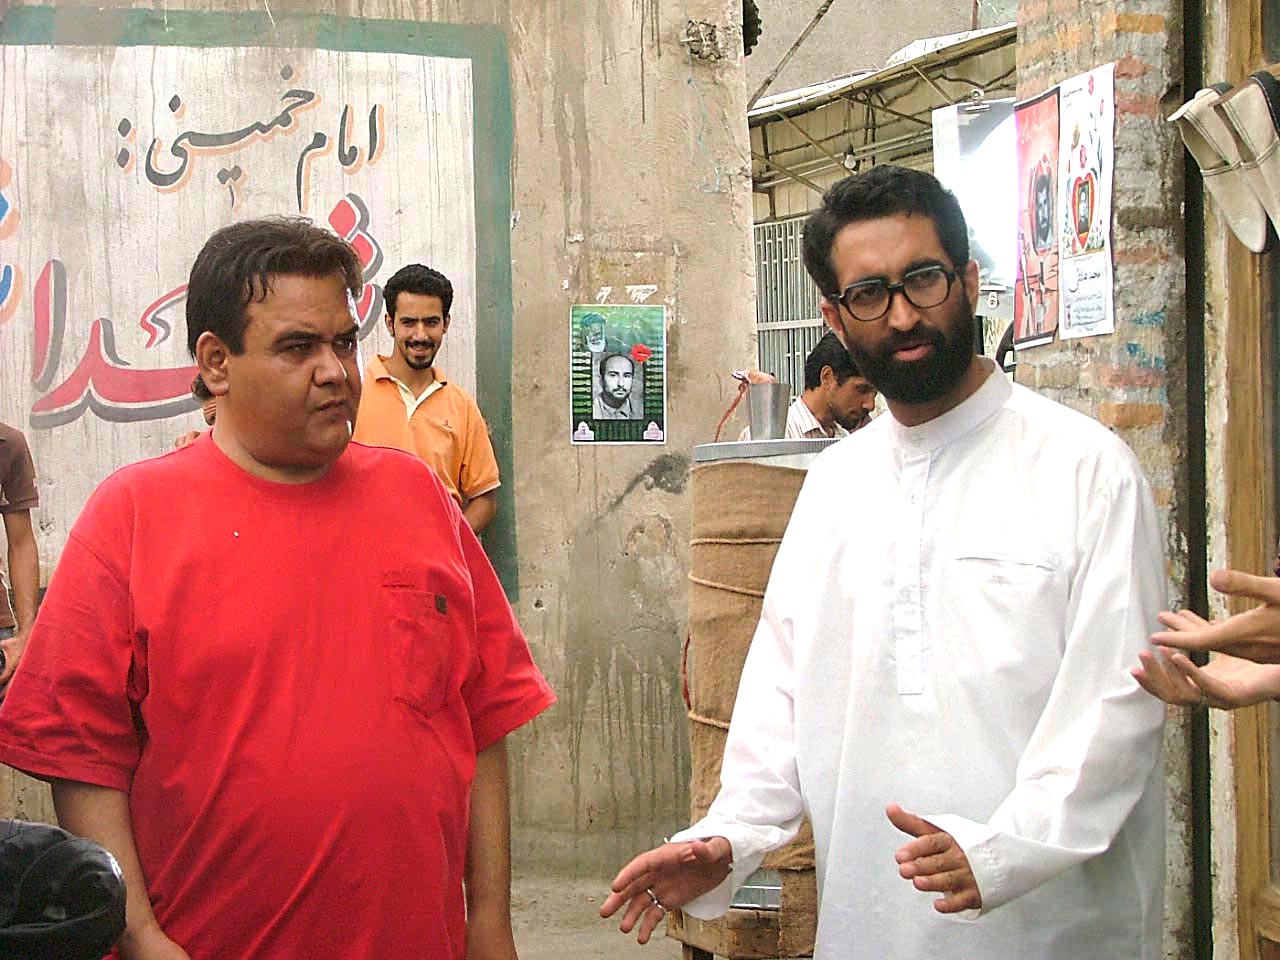 تصویری از ابوالفضل همراه، بازیگر سینما و تلویزیون در حال بازیگری سر صحنه یکی از آثارش